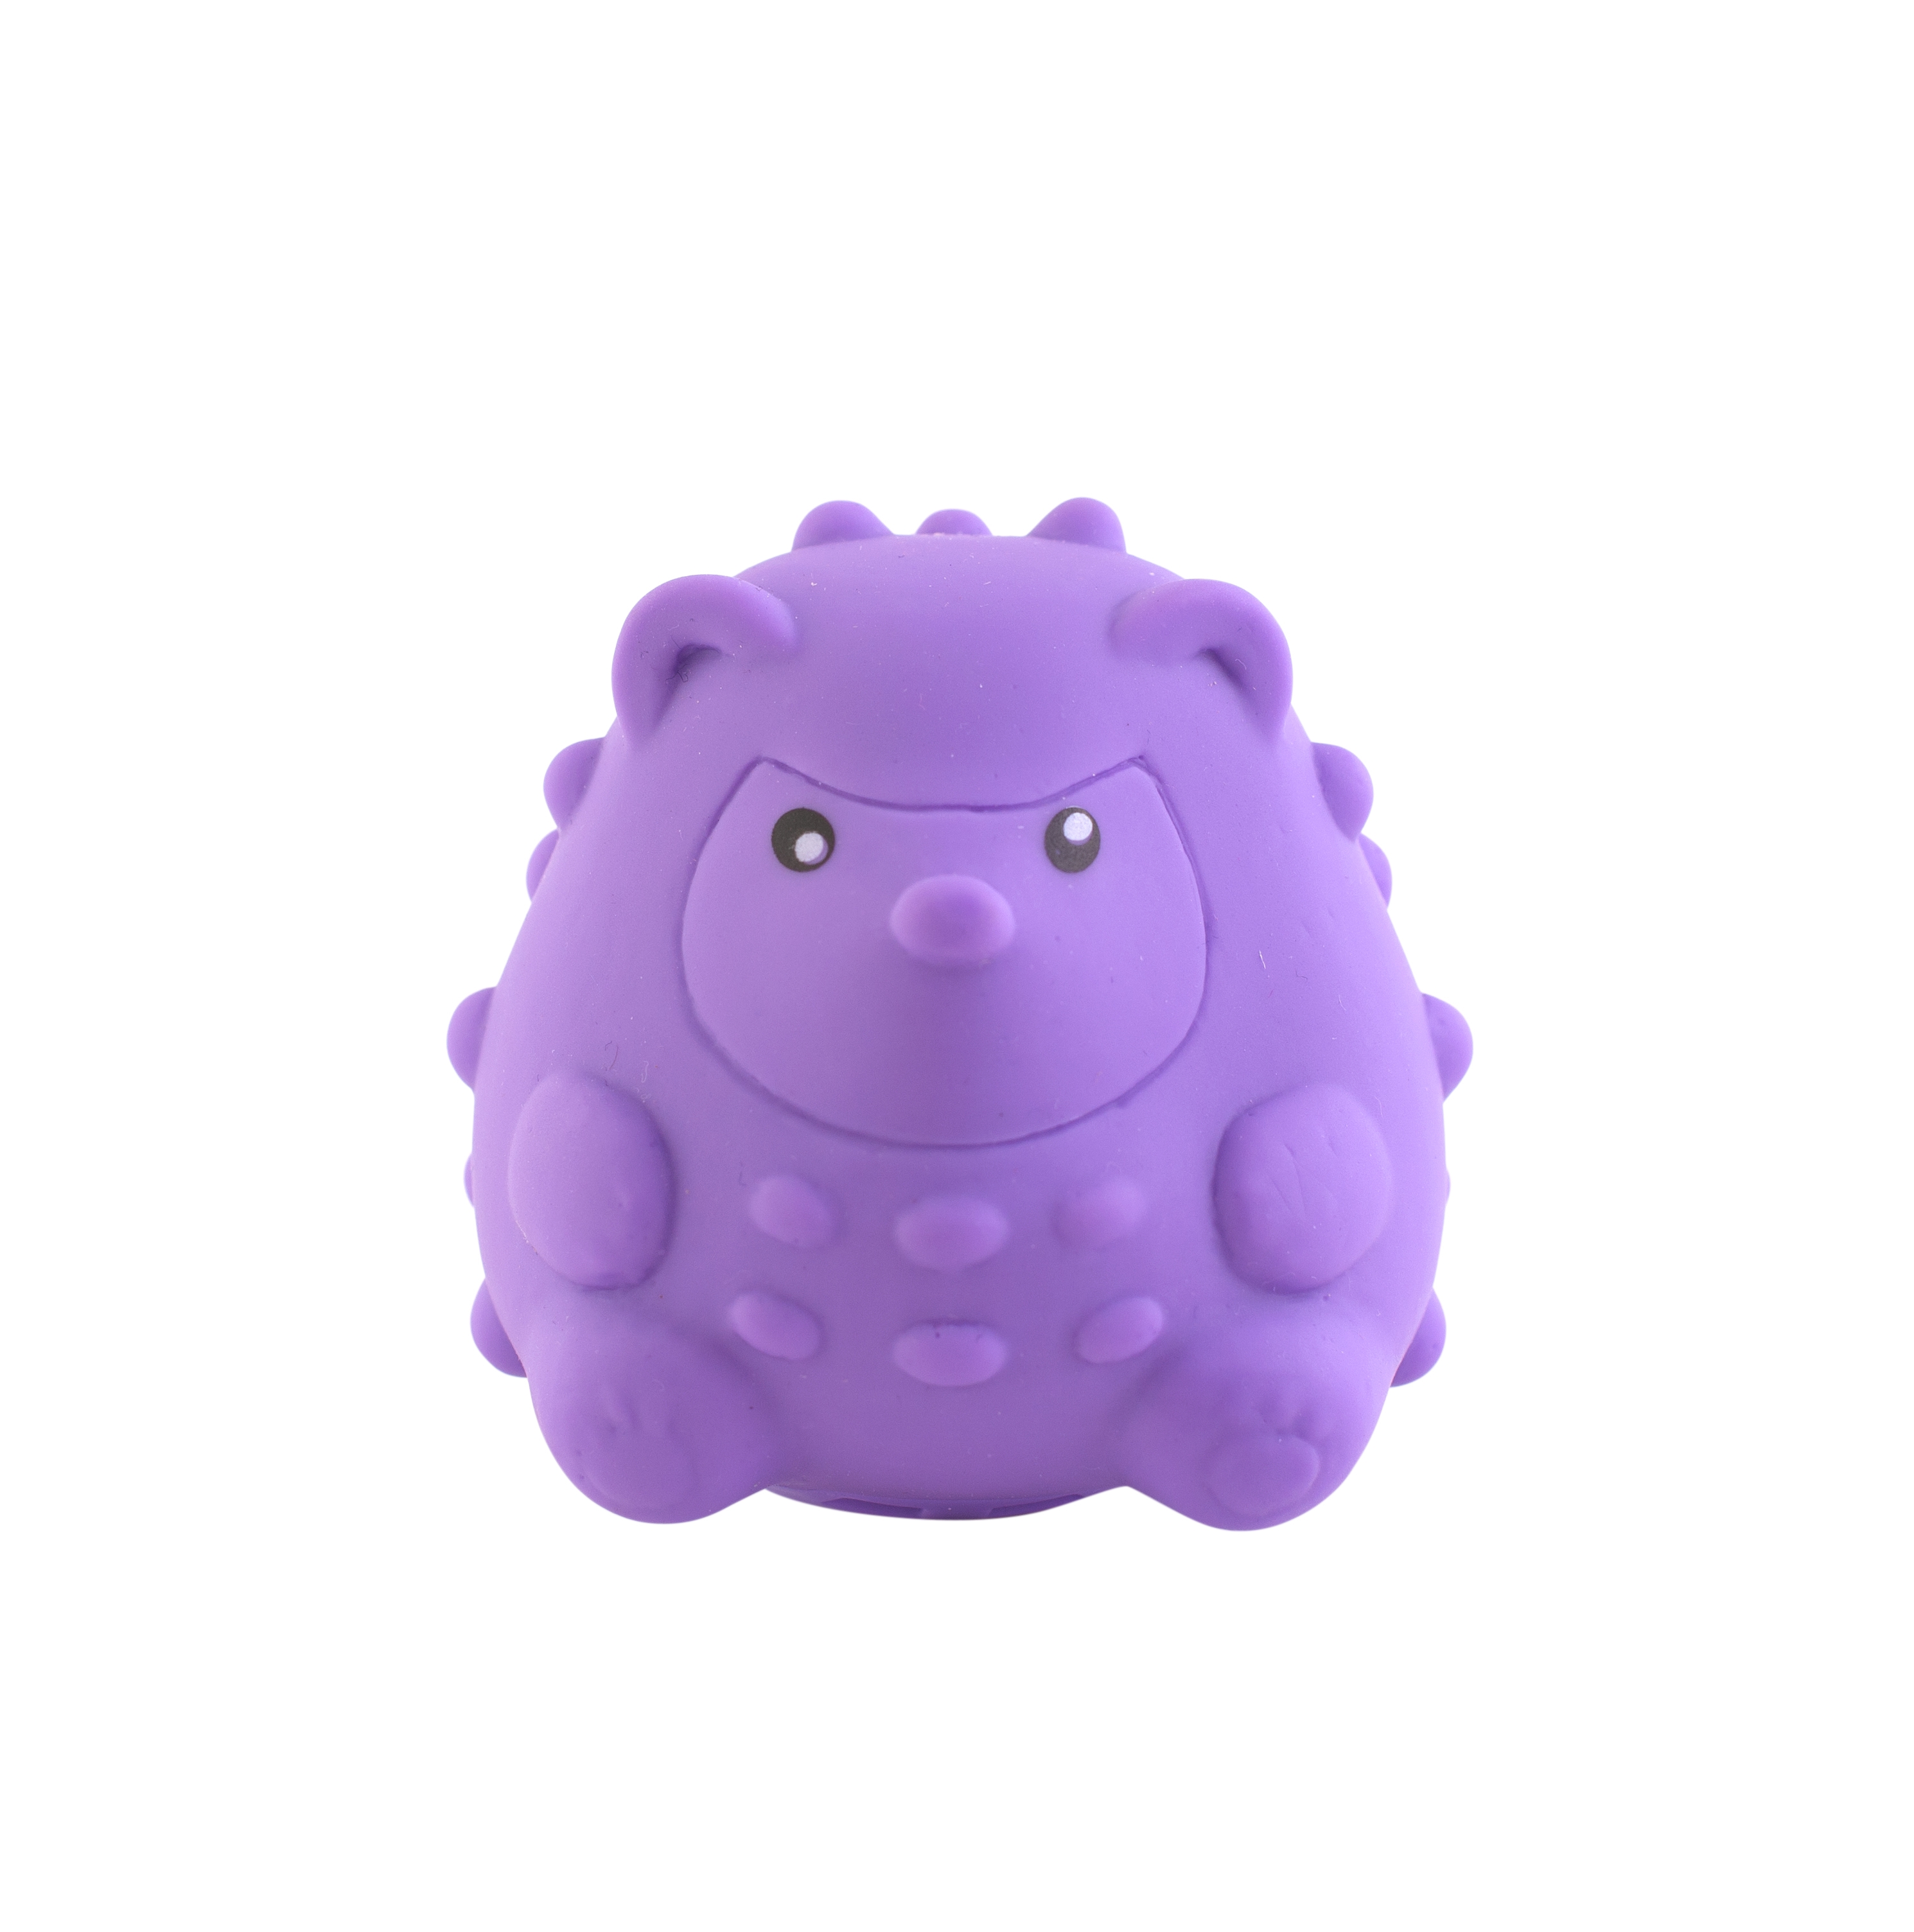 Іграшка для ванної Baby Team Звірятко, зі звуком, фіолетовий (8745_фиолетвоая_зверушка) - фото 1